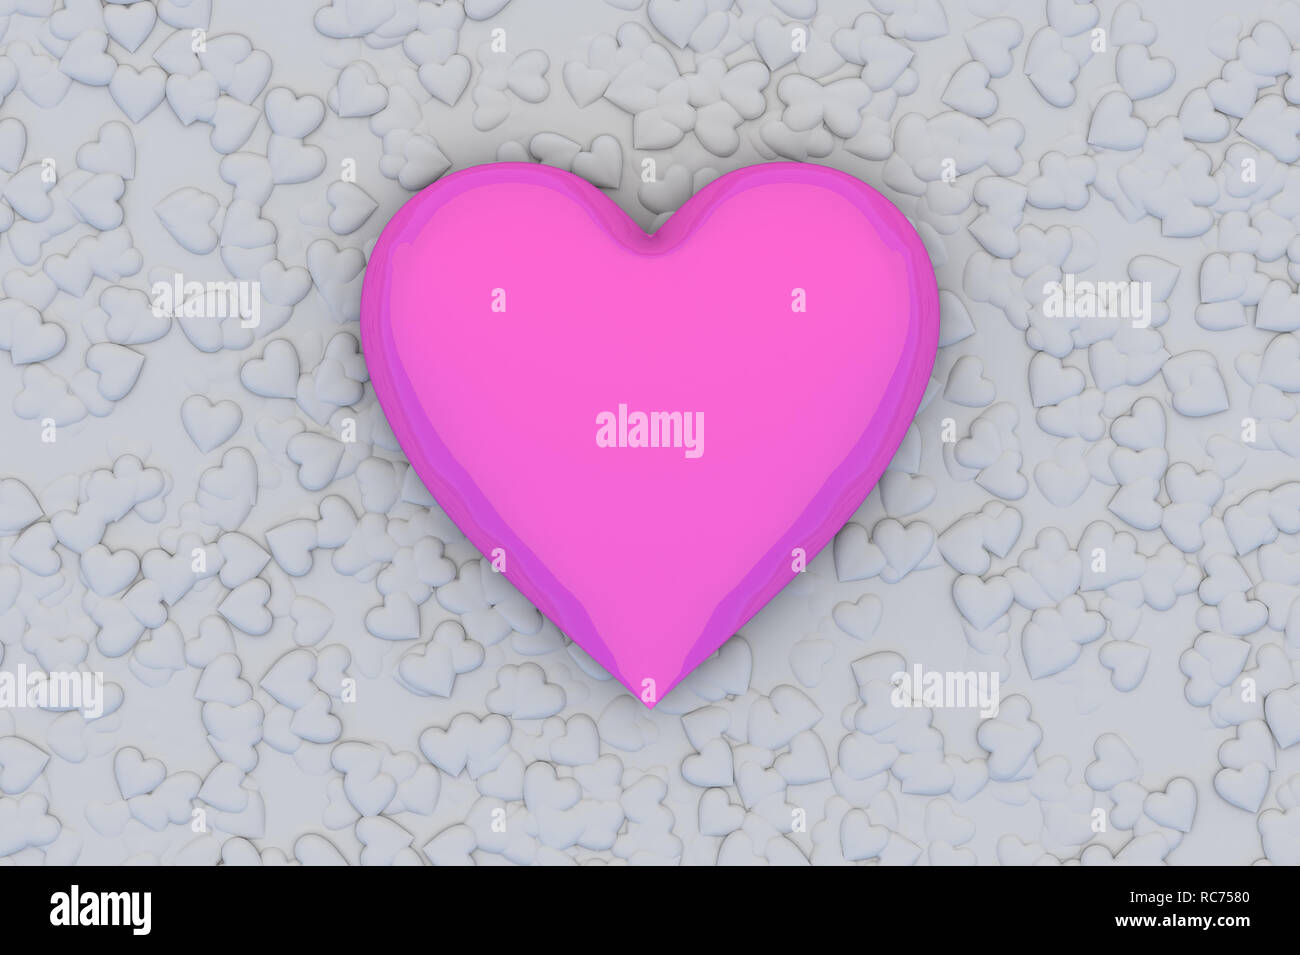 Resumen del día de San Valentín de Fondo 3D con grandes corazones de color rosa sobre fondo gris Foto de stock